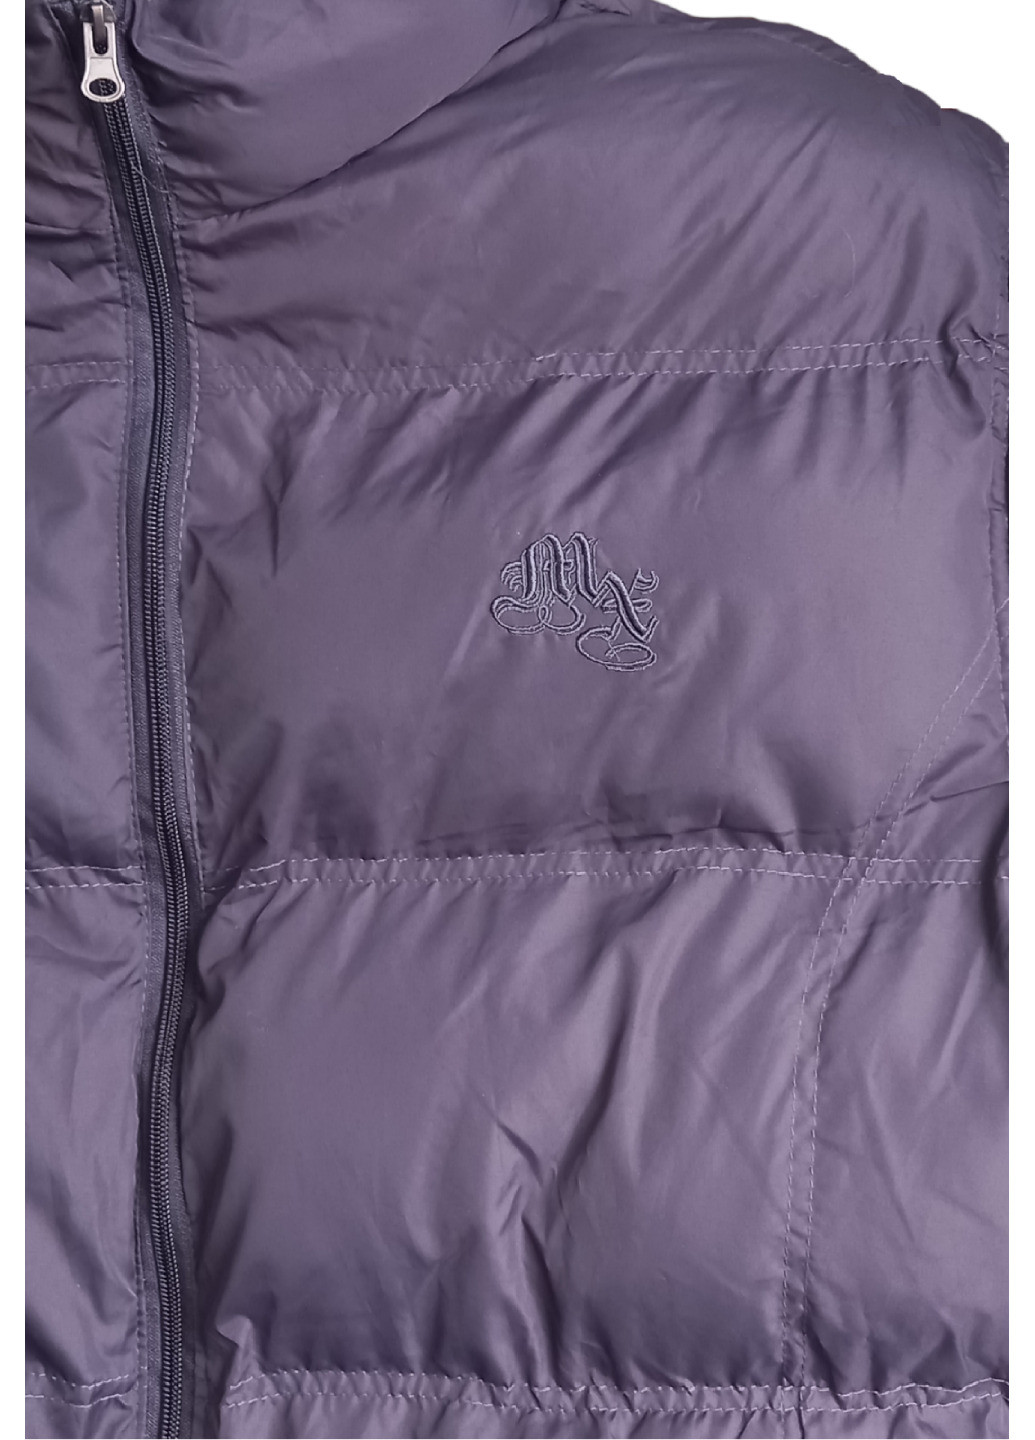 Темно-фиолетовая демисезонная фирменная куртка max's, новая, синтепон No Brand